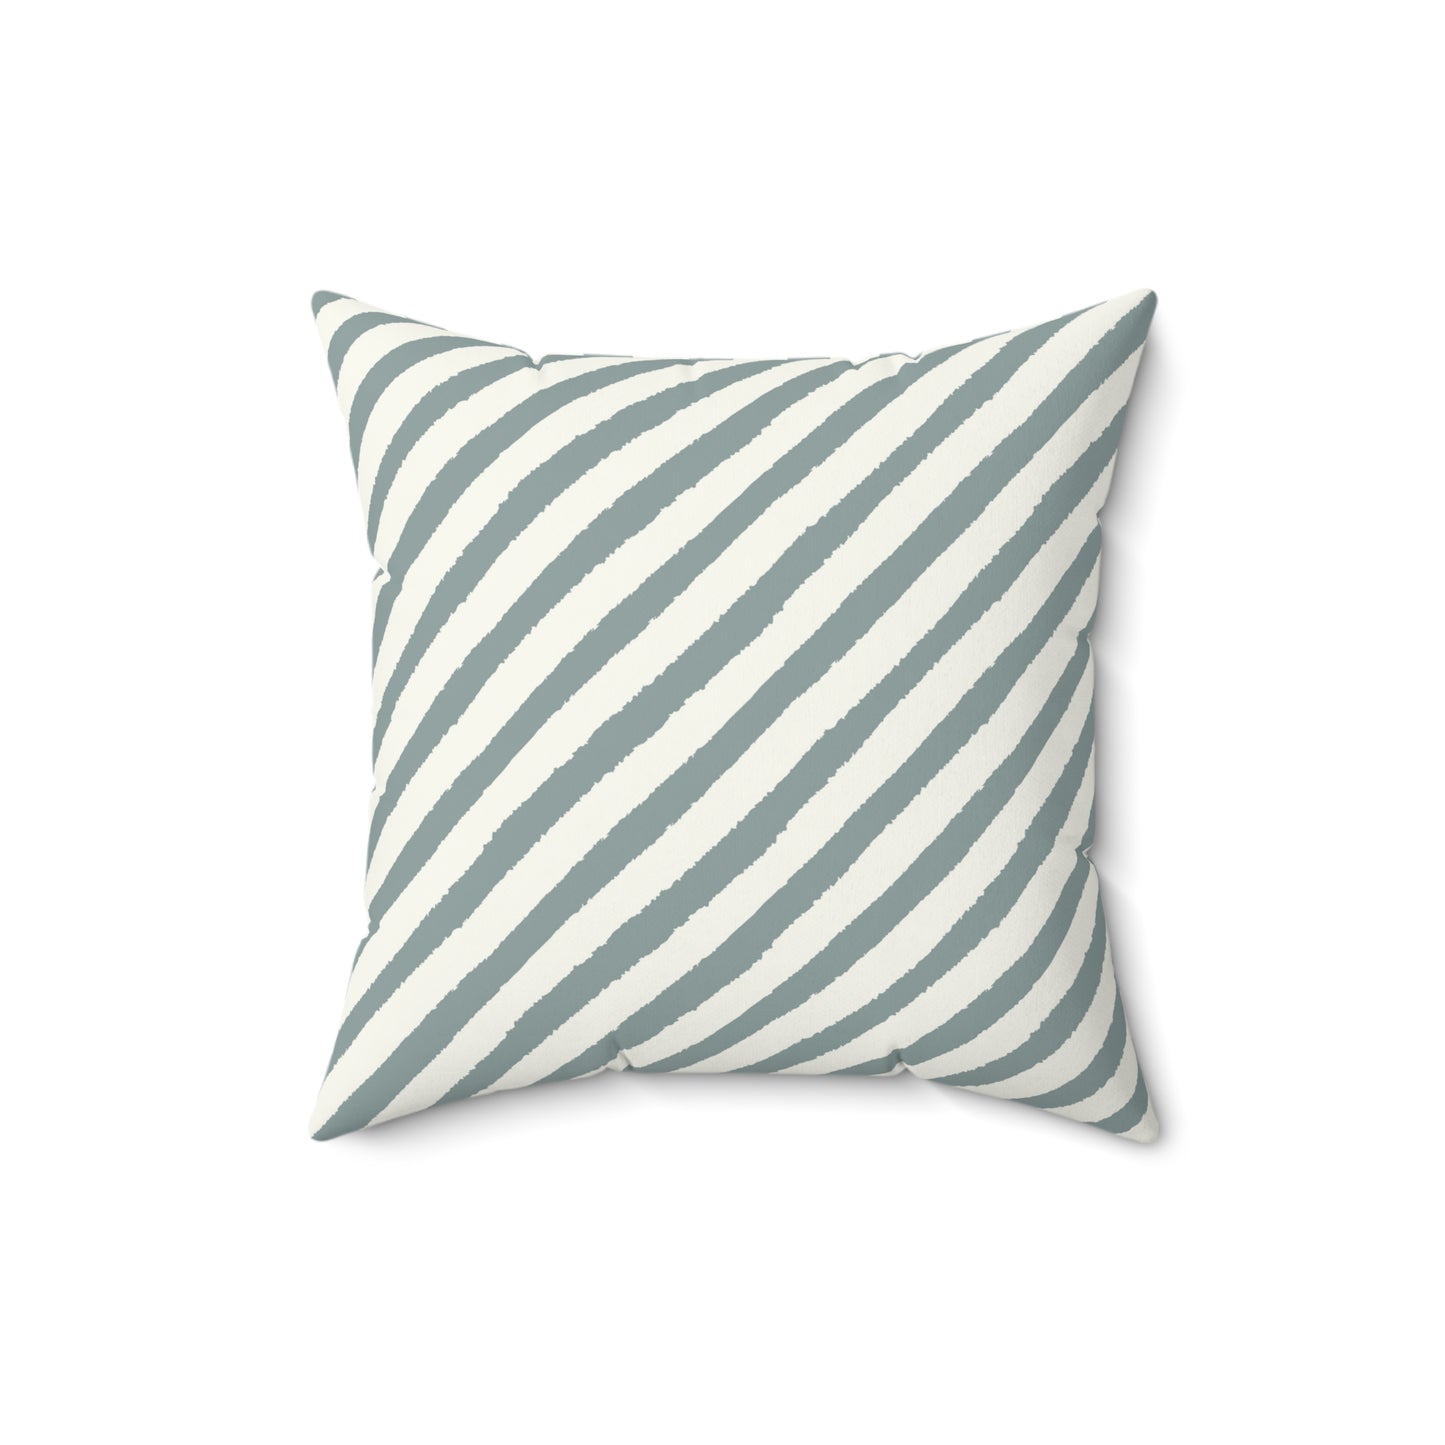 Stripe Throw Pillow Coastal Accent Pillow Boho Farmhouse Abstract Pillow